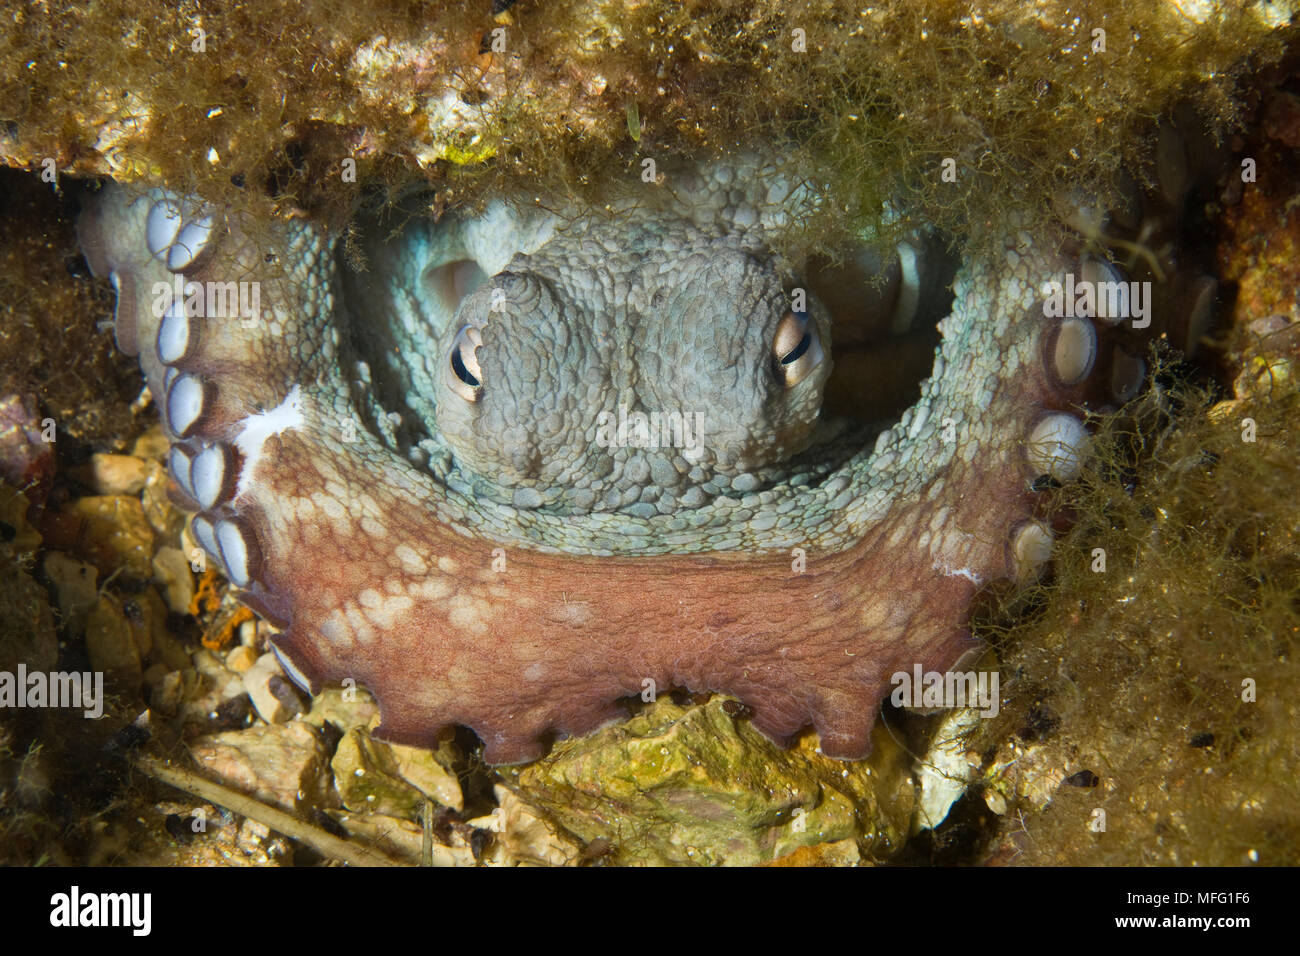 Poulpe (Octopus vulgaris) à l'intérieur de sa tanière, la réserve marine du Larvotto, Monaco, mer Méditerranée : la Mission de la réserve marine du Larvotto Banque D'Images